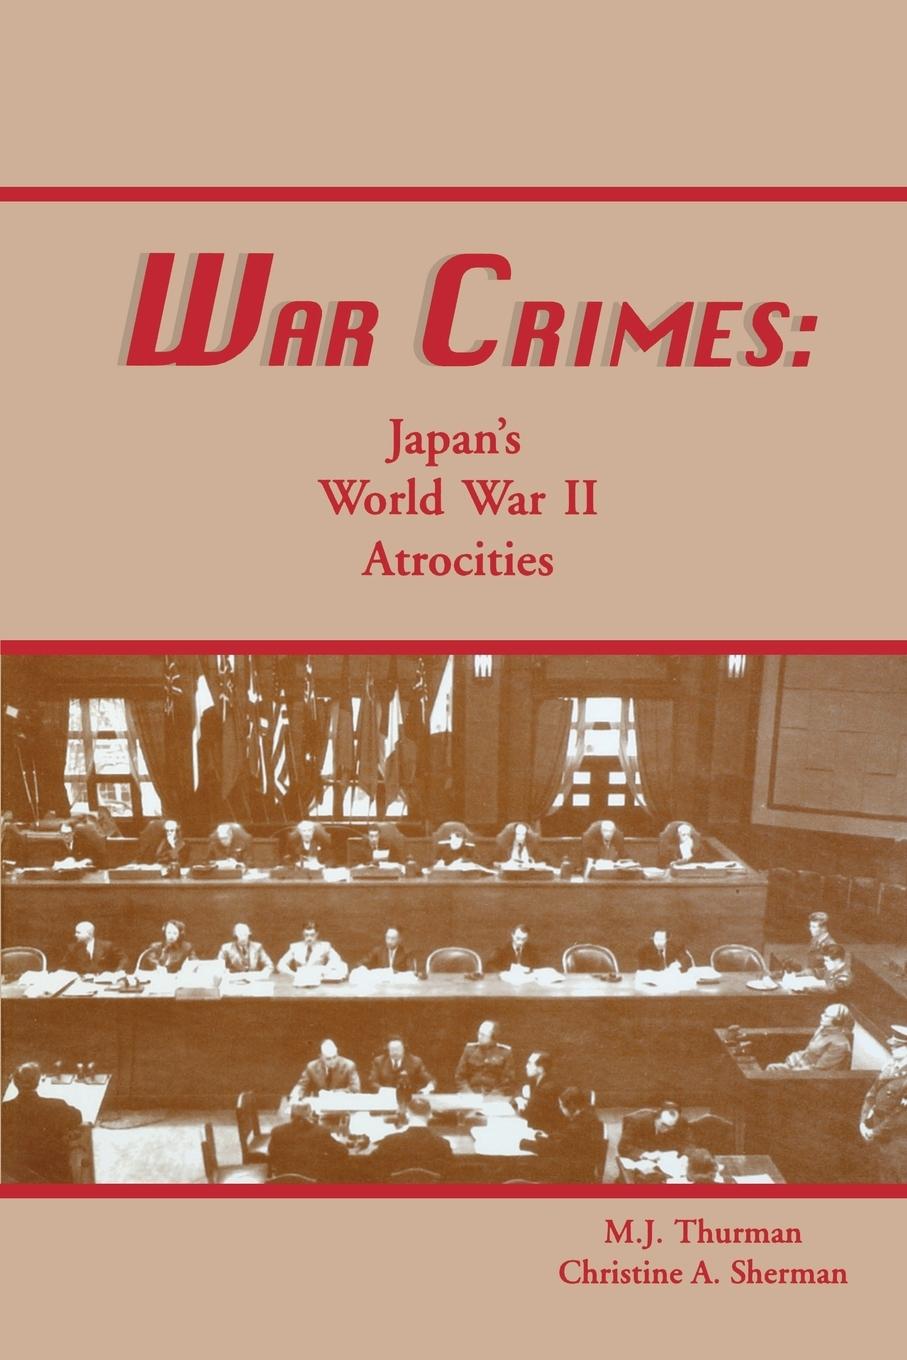 War Crimes: Japan\\ s World War II Atrocitie - Thurman, M. J.|Sherman, Christine